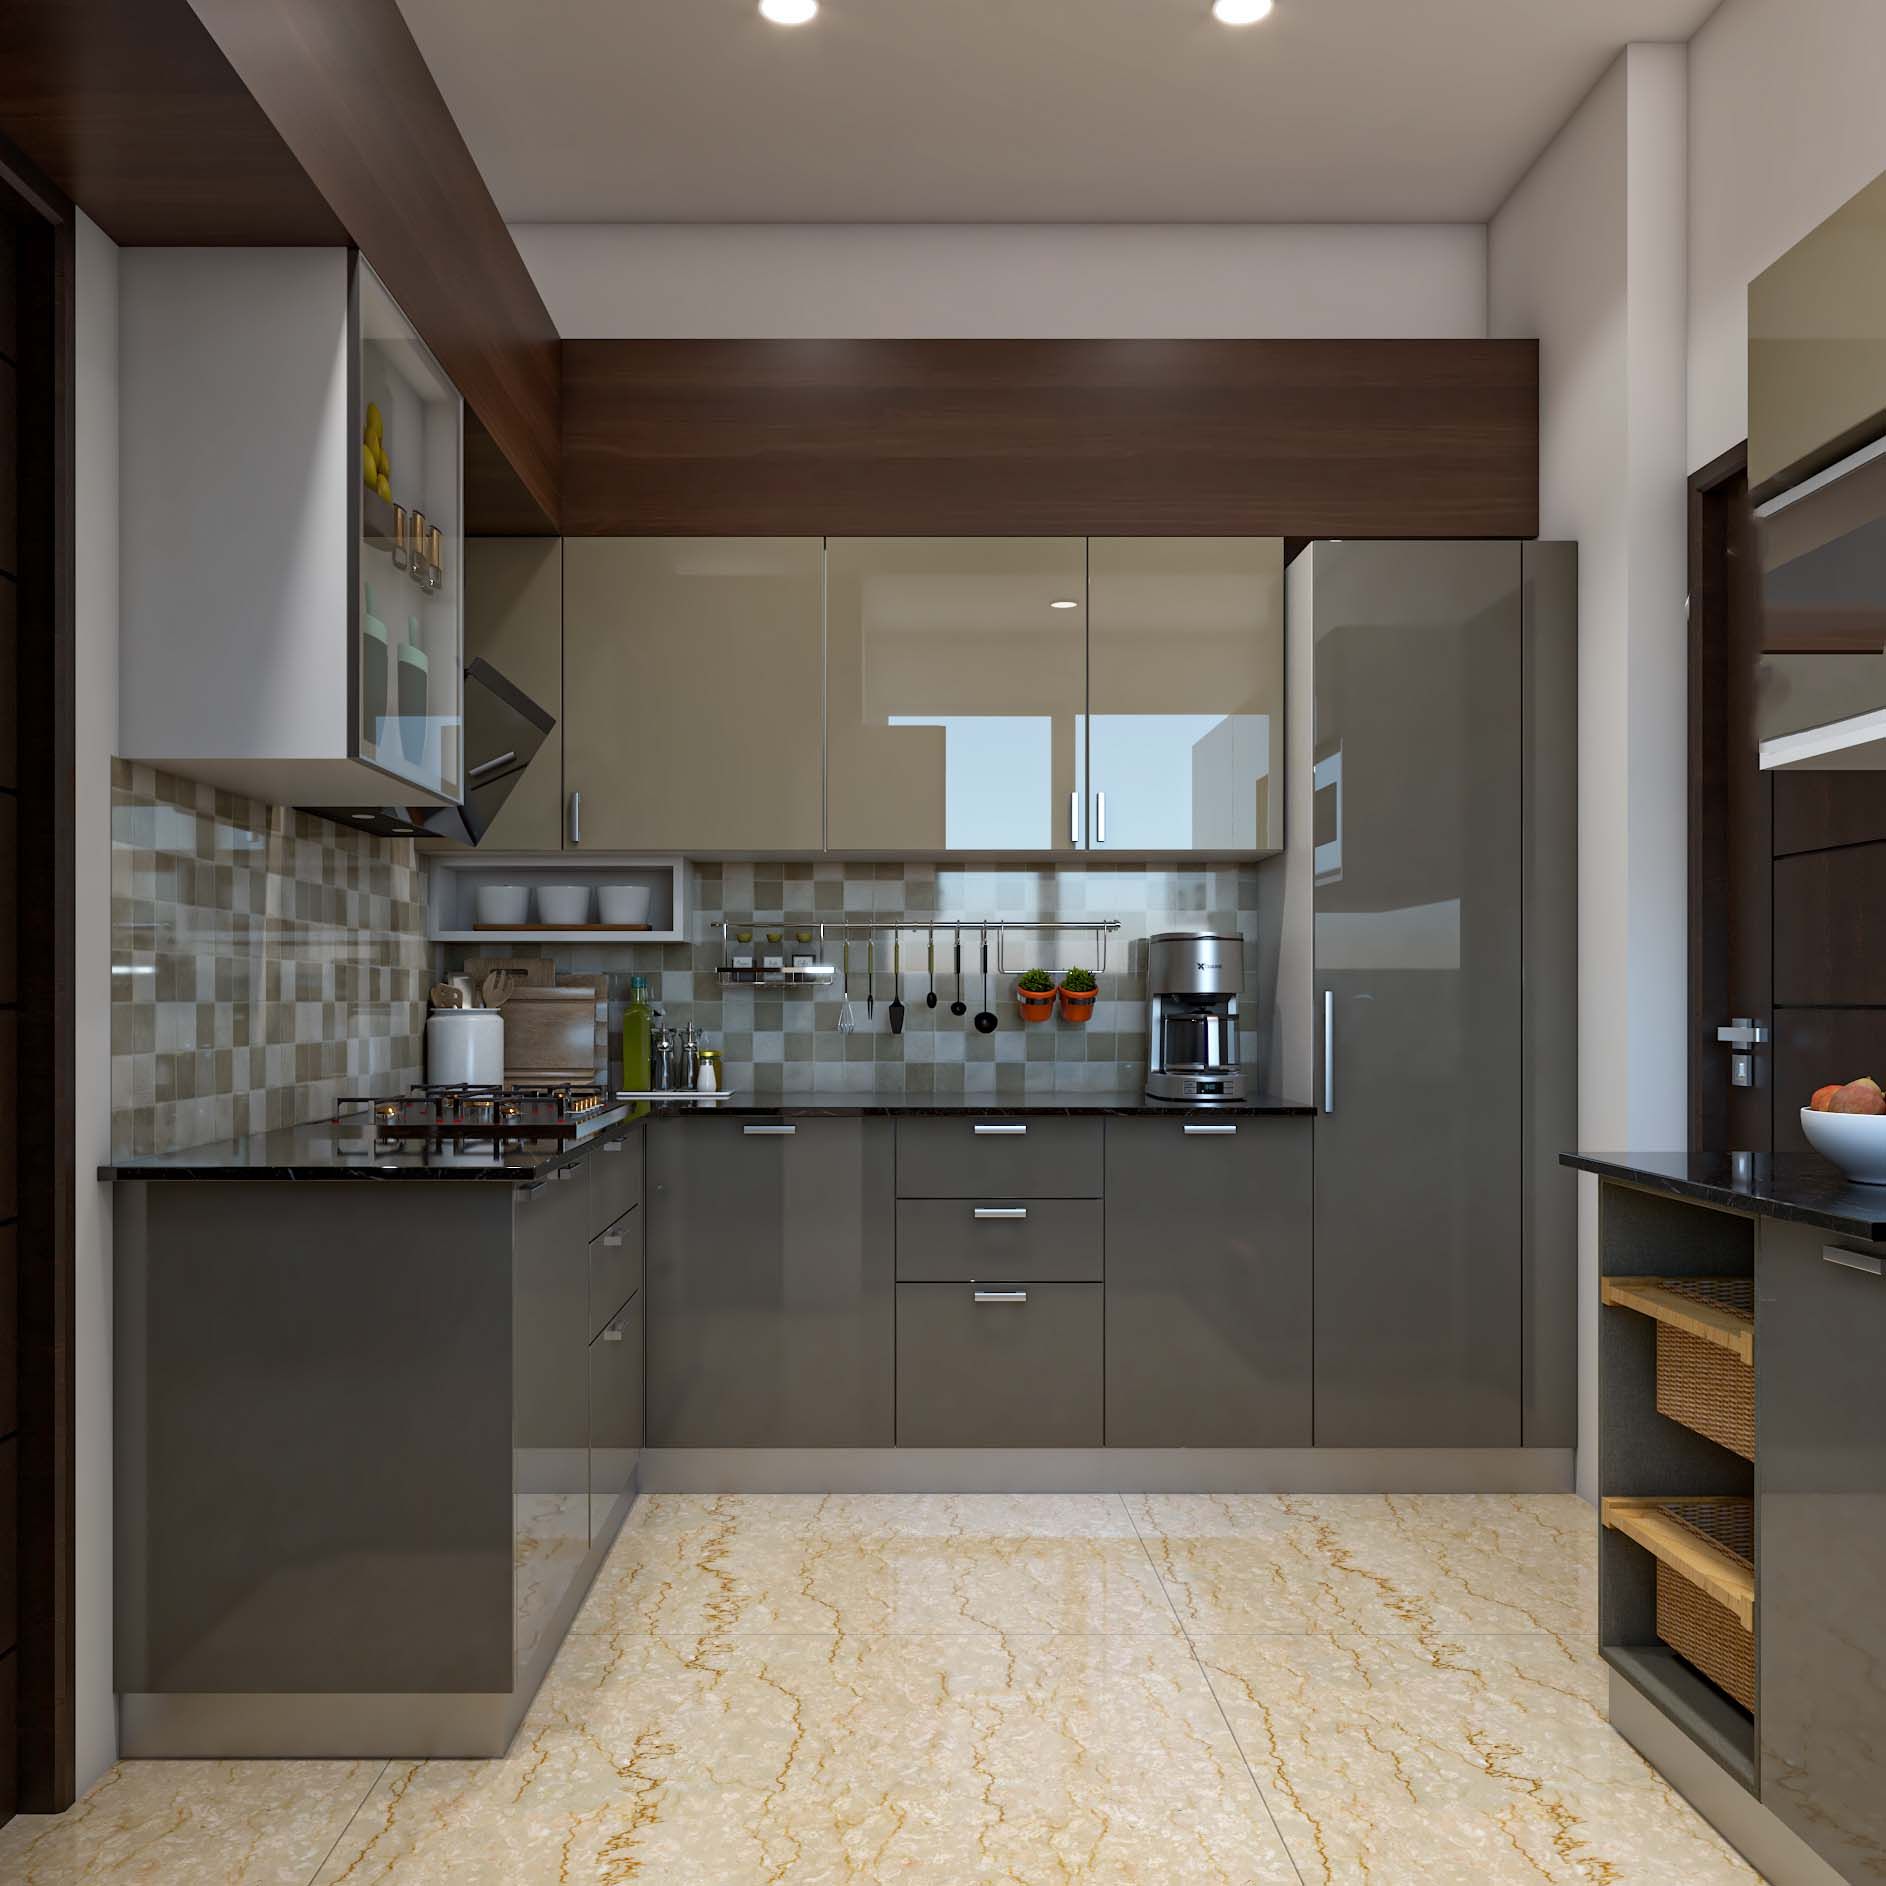 Contemporary Kitchen Design With A Granite Countertop